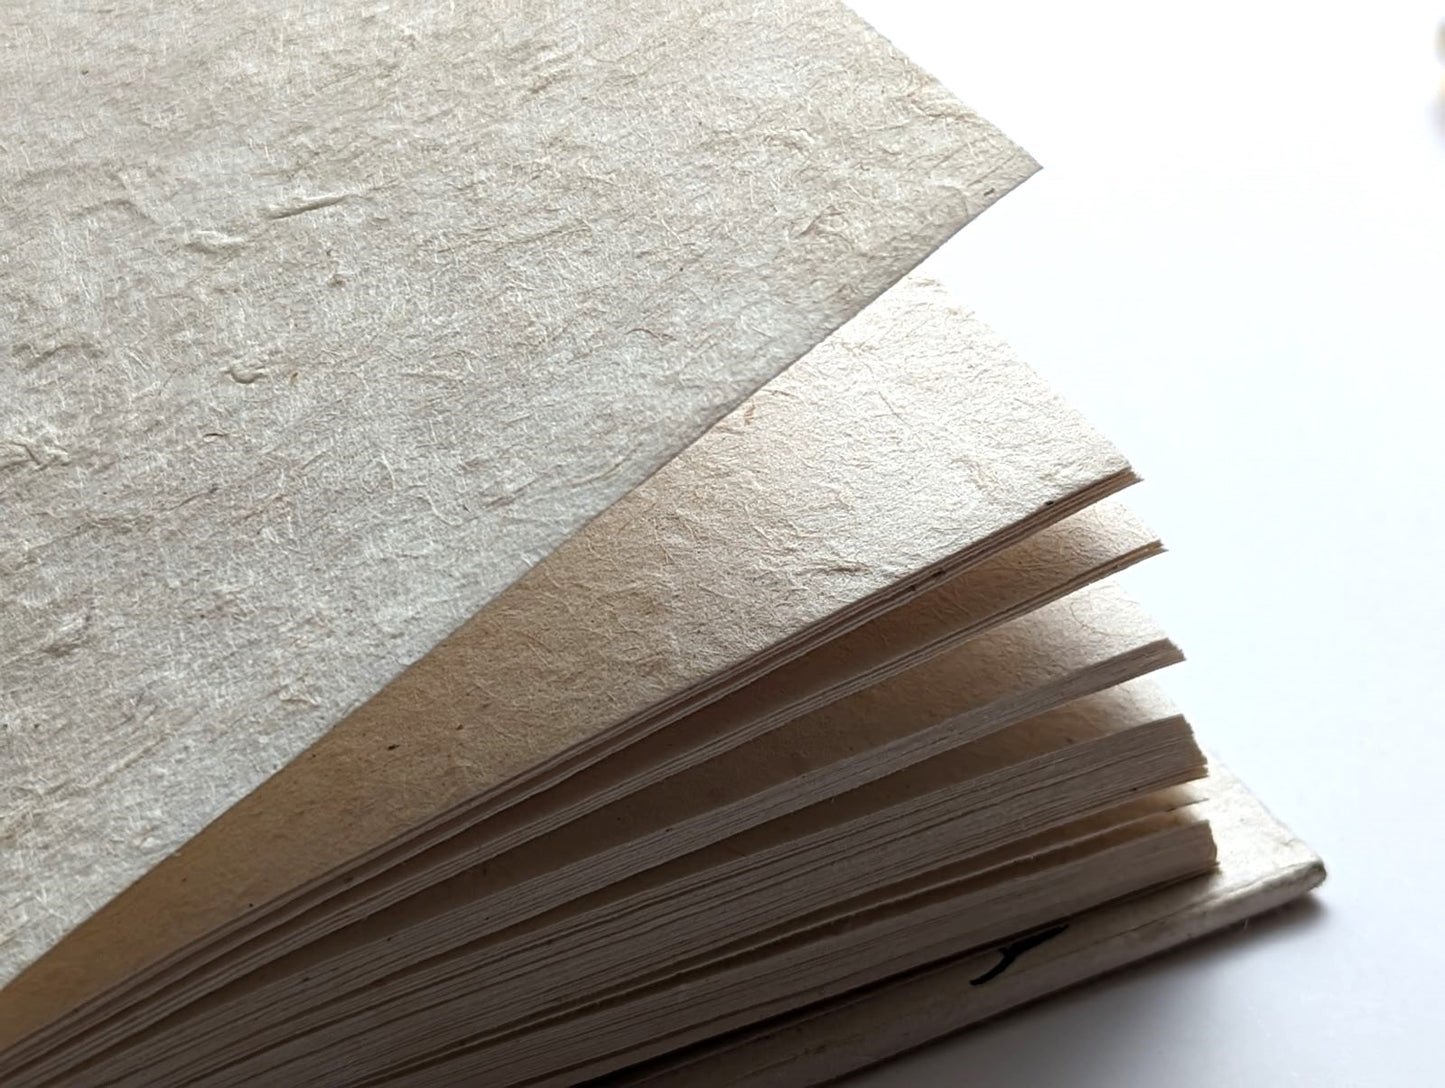 Handmade Paper Journal | Ratna in Black - Stalks in Vase